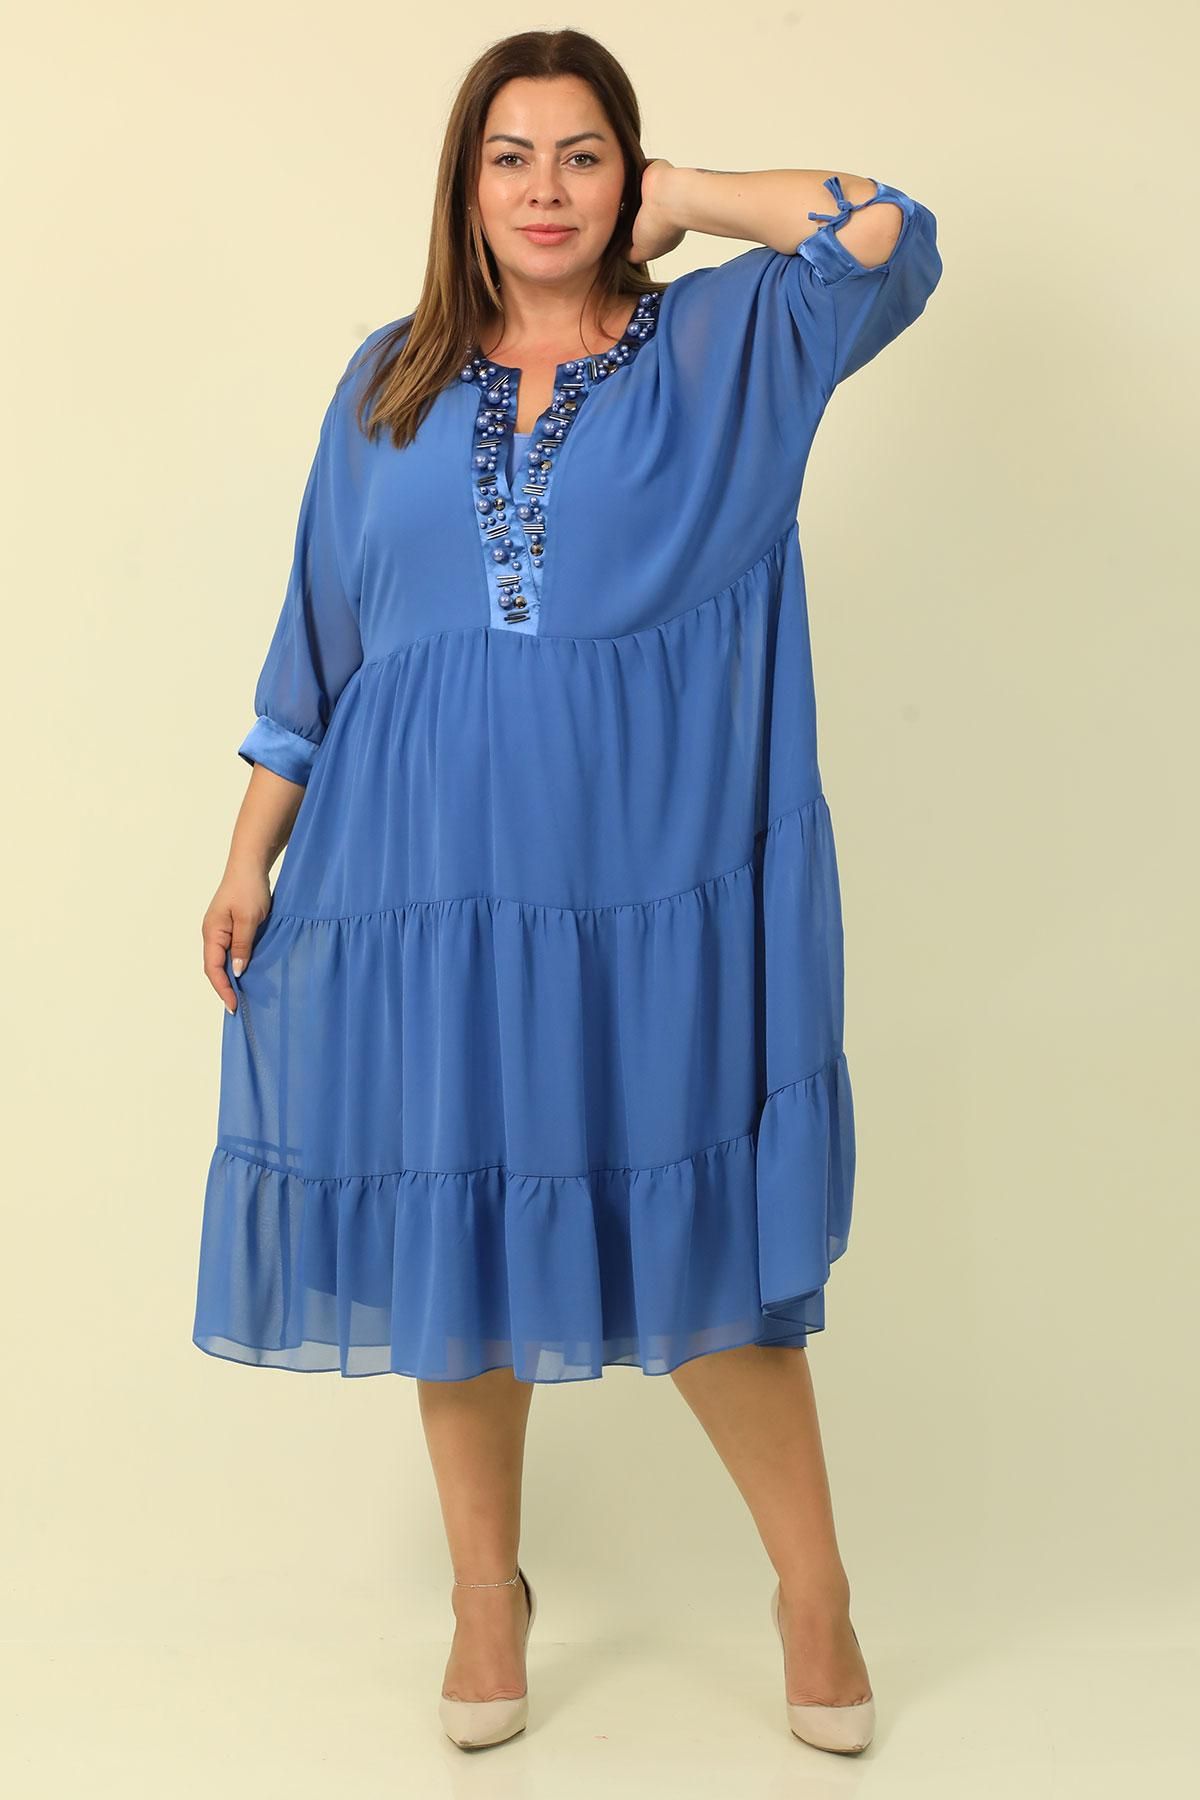 Wioma 7009xl BLUE Plus Size Women Dress | Dosso Dossi